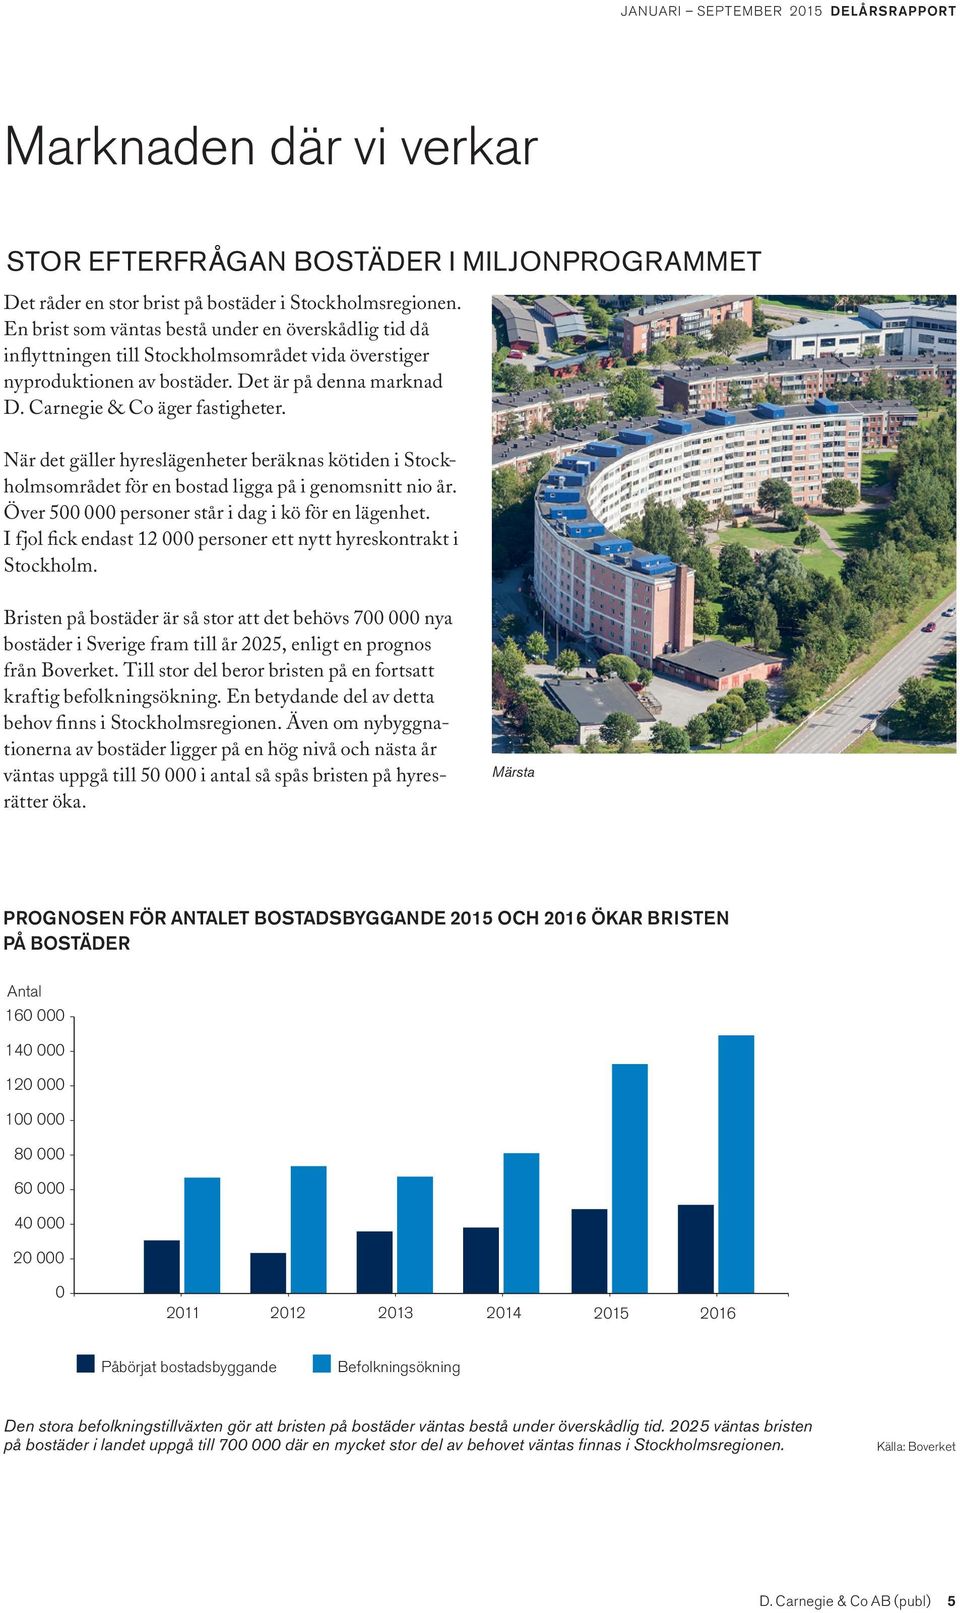 När det gäller hyreslägenheter beräknas kötiden i Stockholmsområdet för en bostad ligga på i genomsnitt nio år. Över 500 000 personer står i dag i kö för en lägenhet.